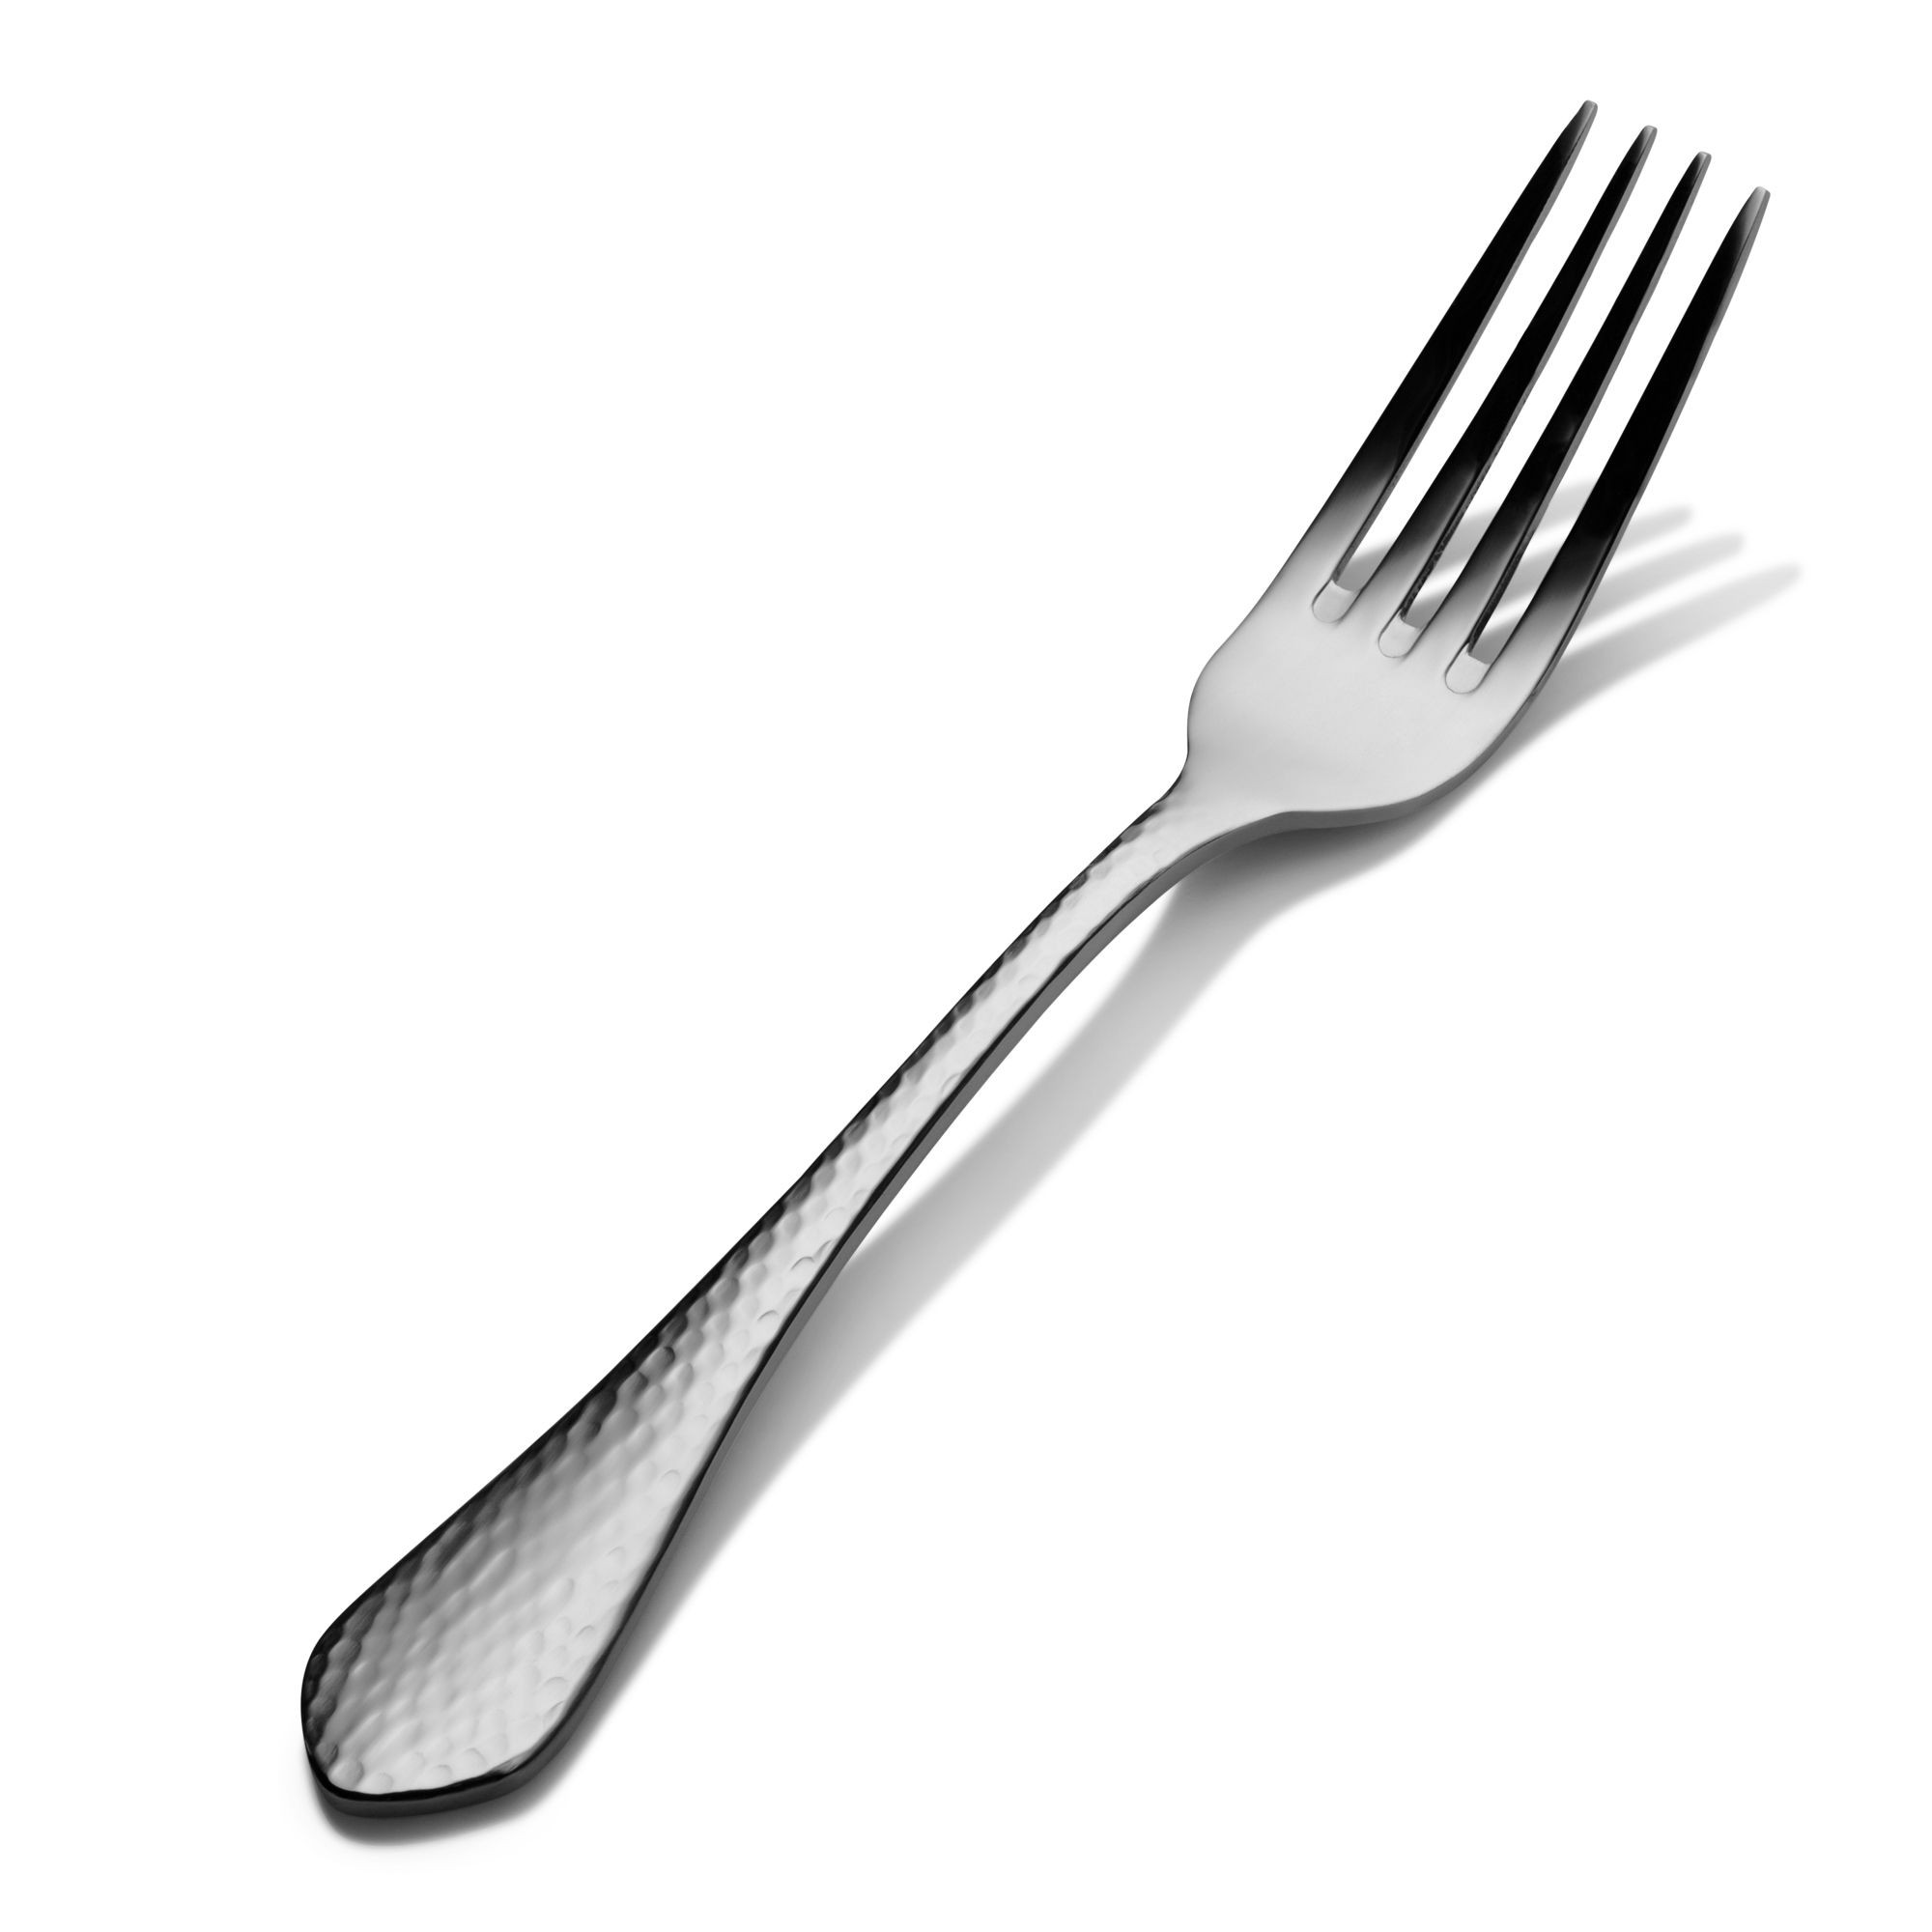 Bon Chef S1205 Reflections 18/8 Stainless Steel Regular Dinner Fork